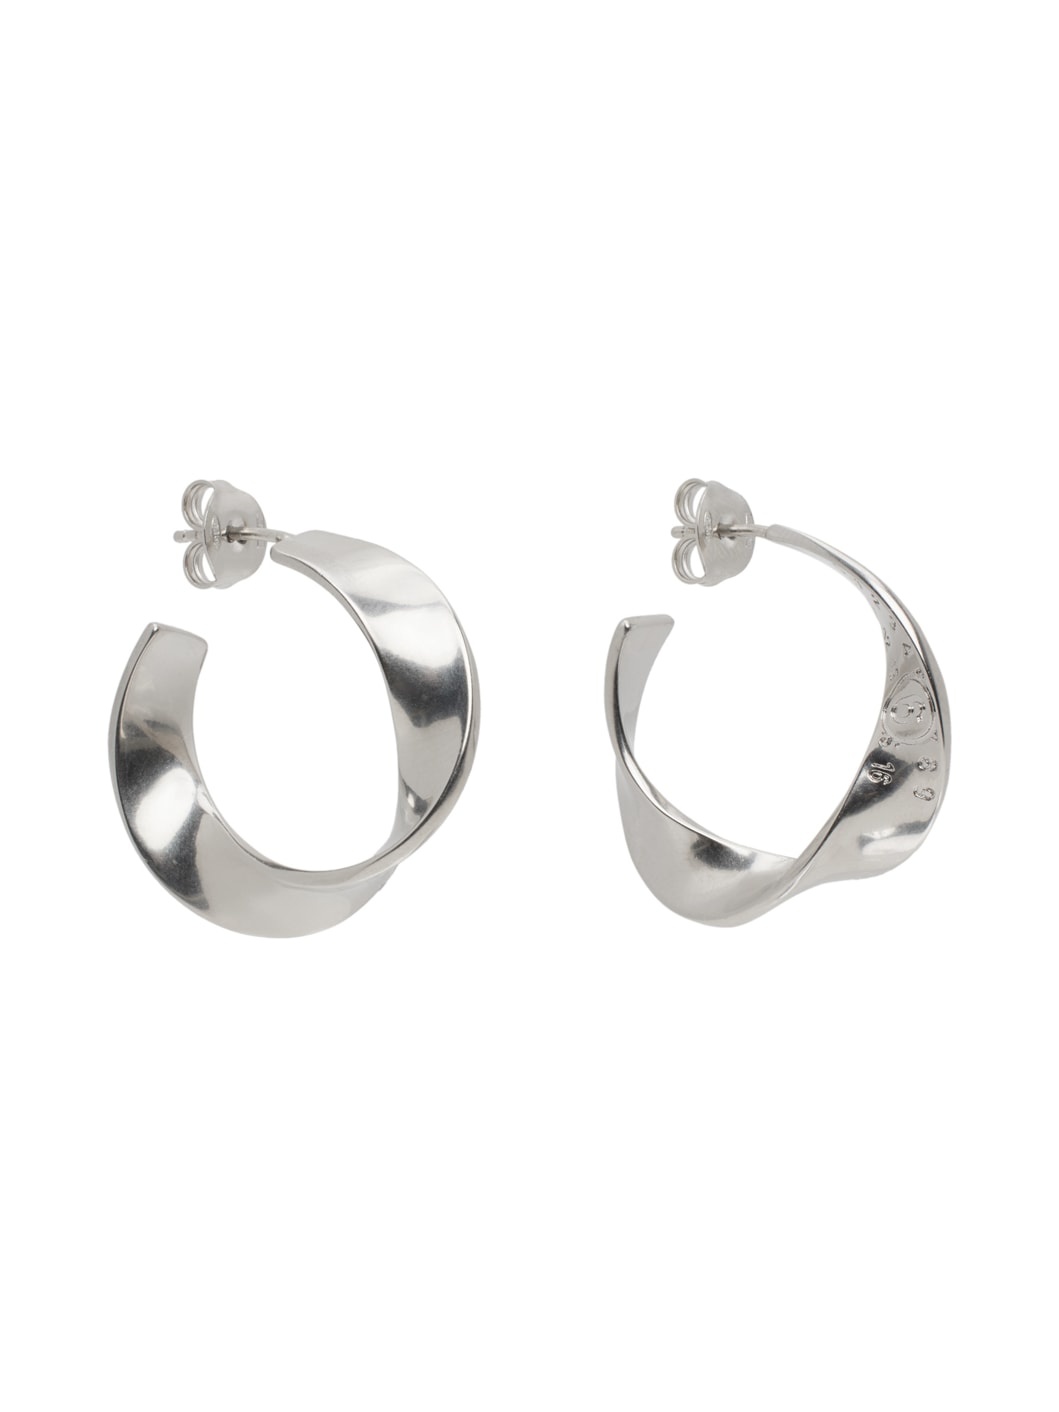 Silver Twisted Hoop Earrings - 2